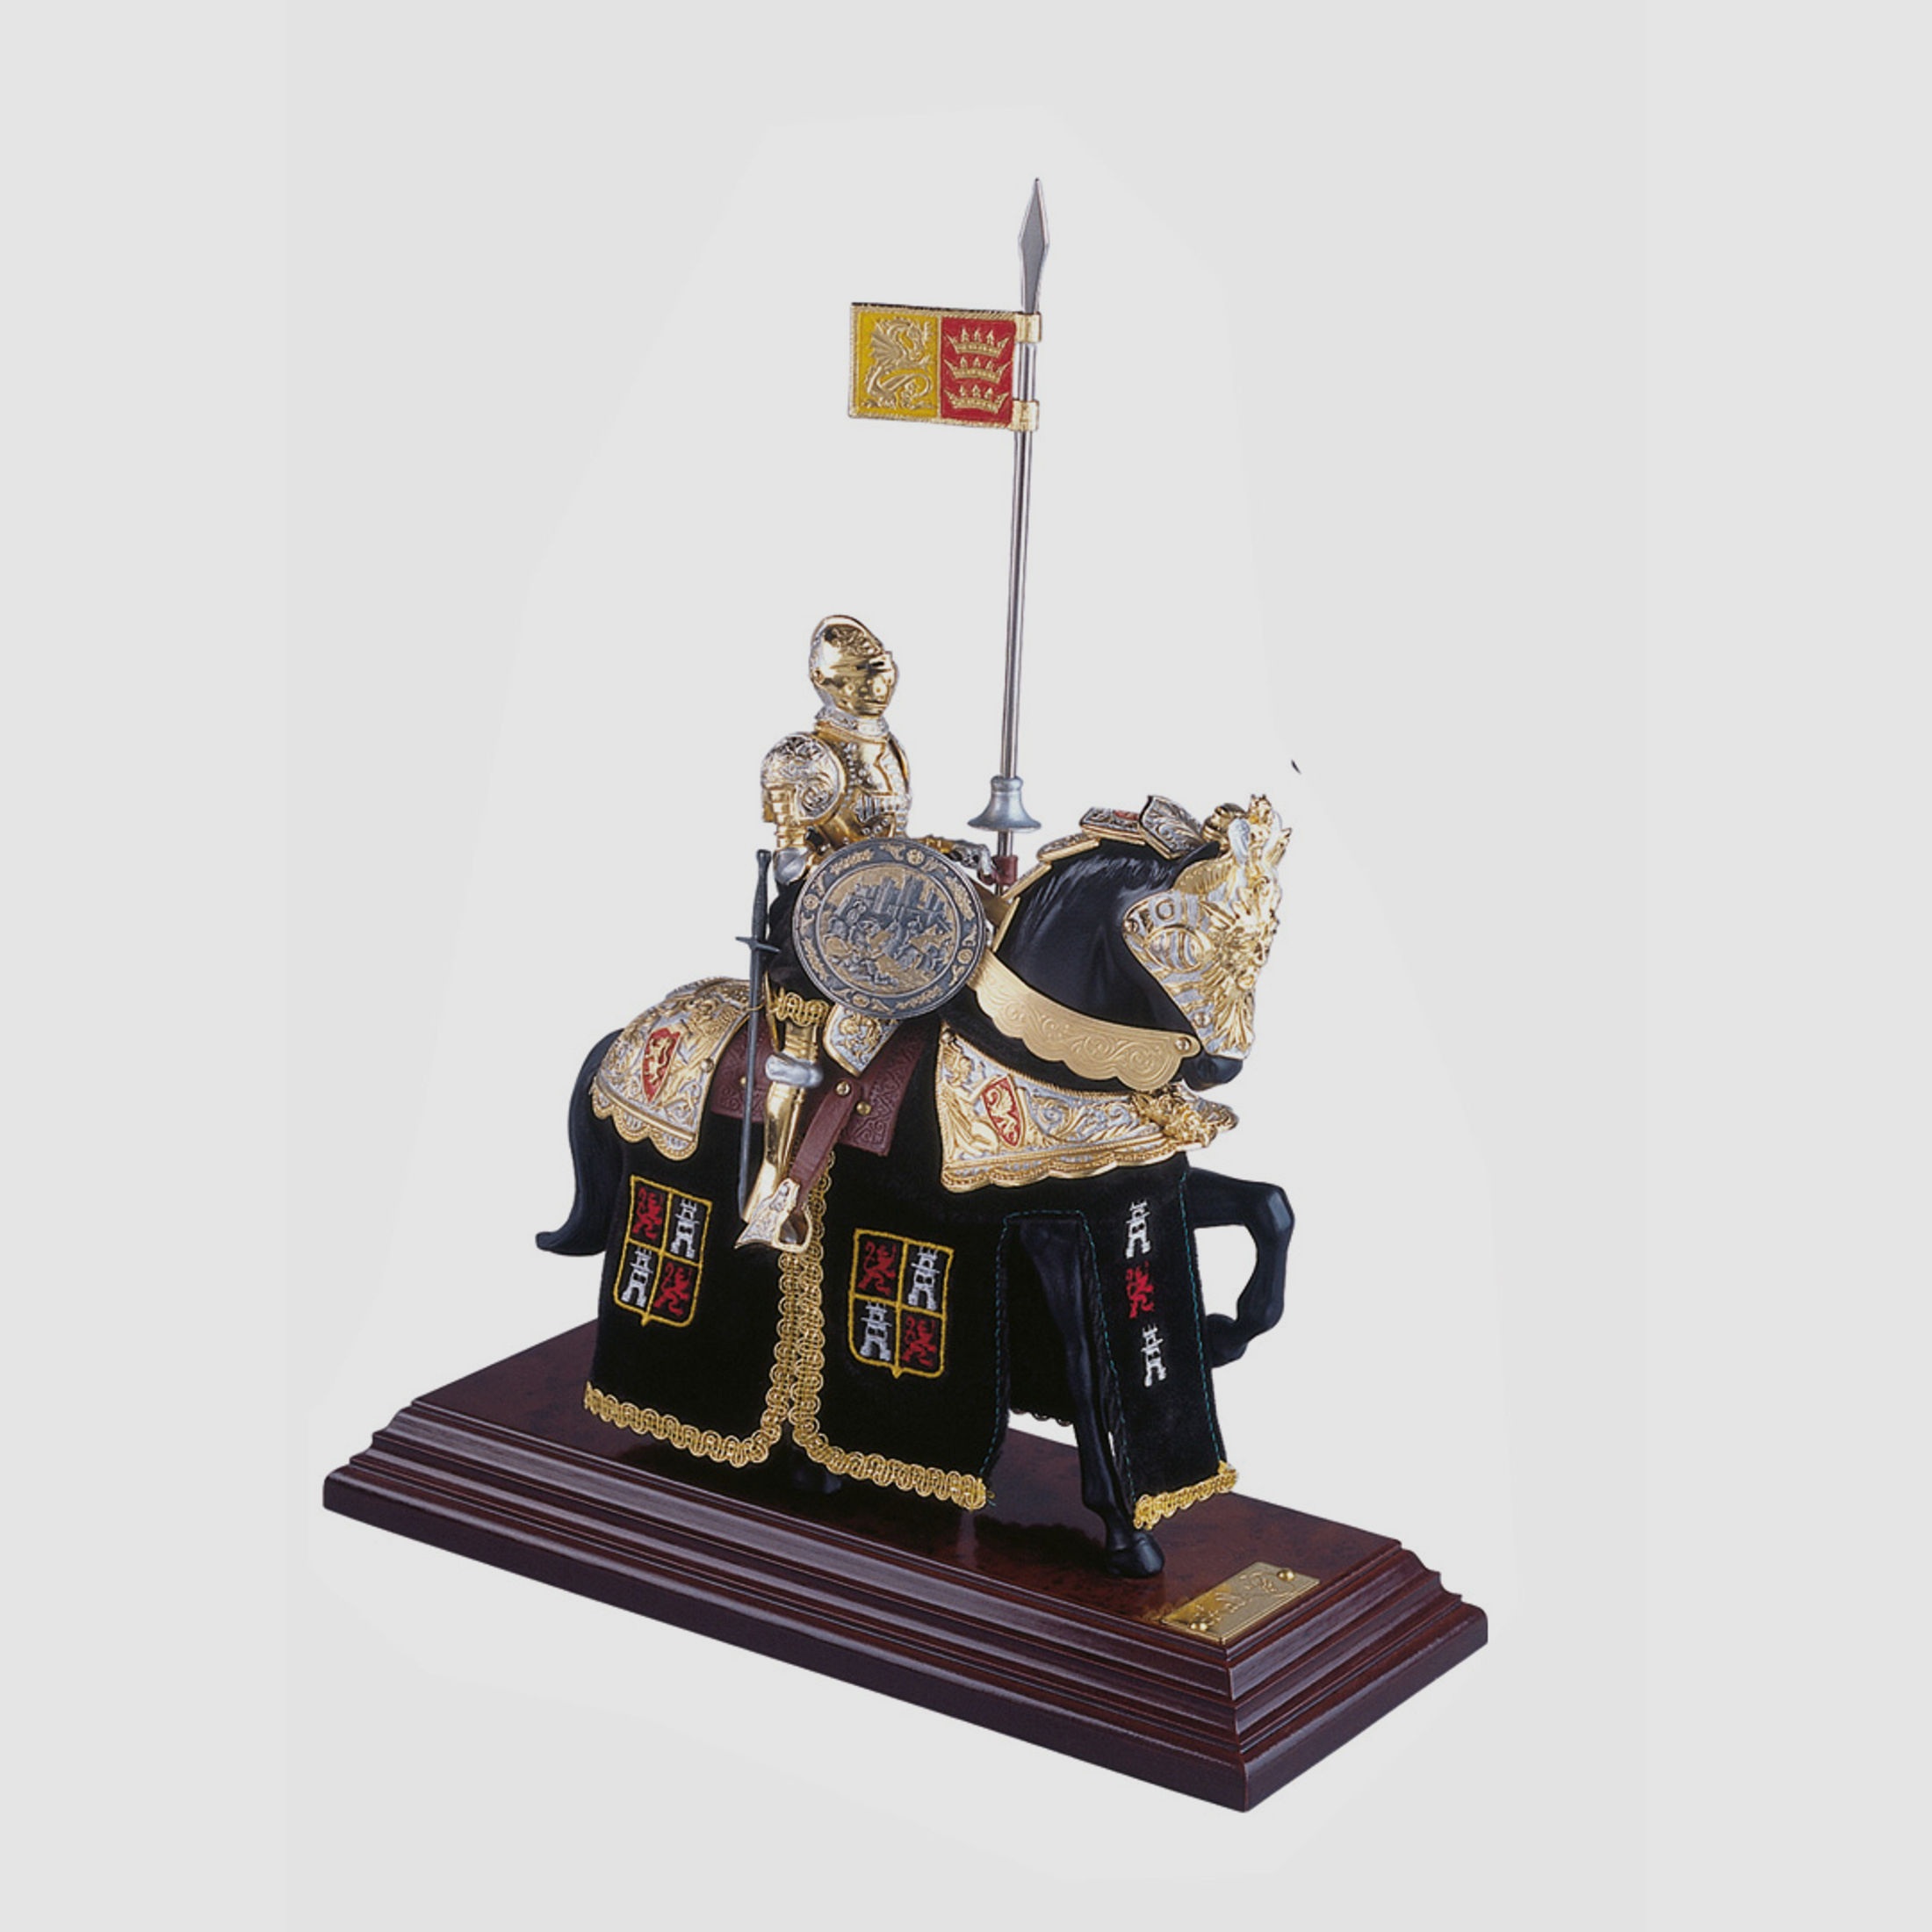 Miniatur Ritter auf Pferd, spanischer Helm, grün | 41950